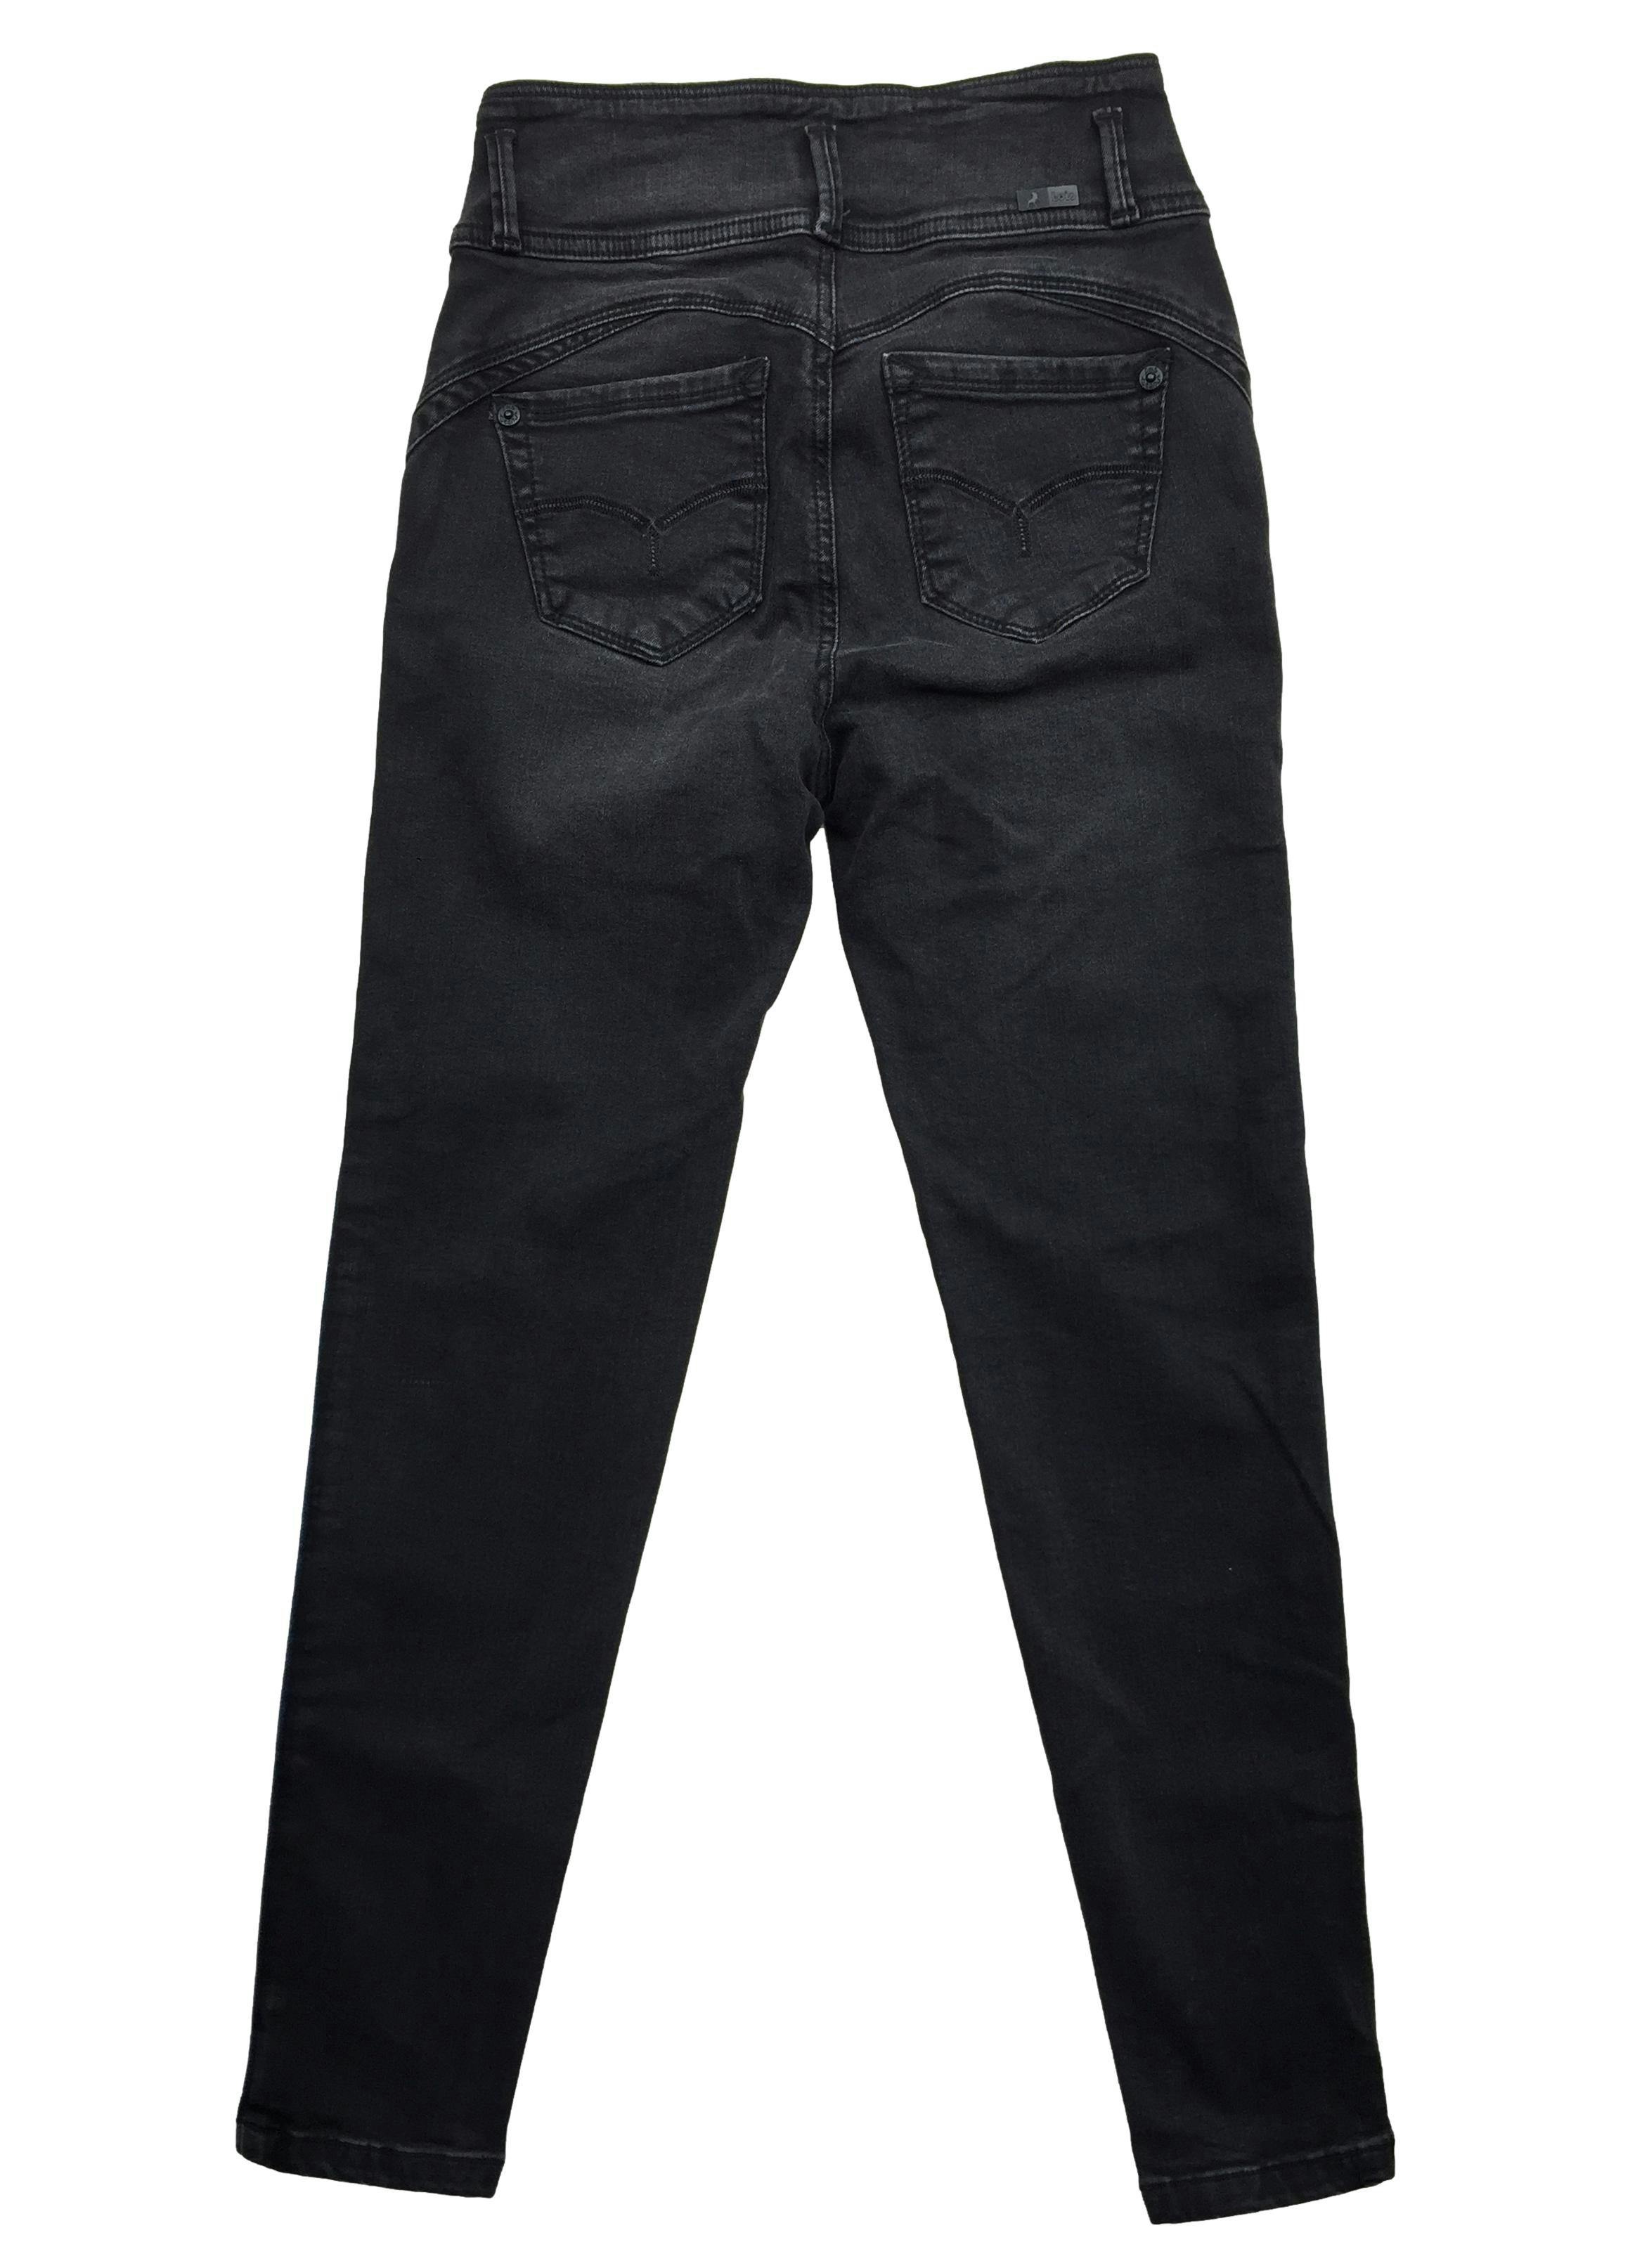 Pantalón Lois jean negro, tiro alto, skinny. Cintura: 58cm, Tiro: 26cm, Largo: 90cm. Nuevo con etiqueta